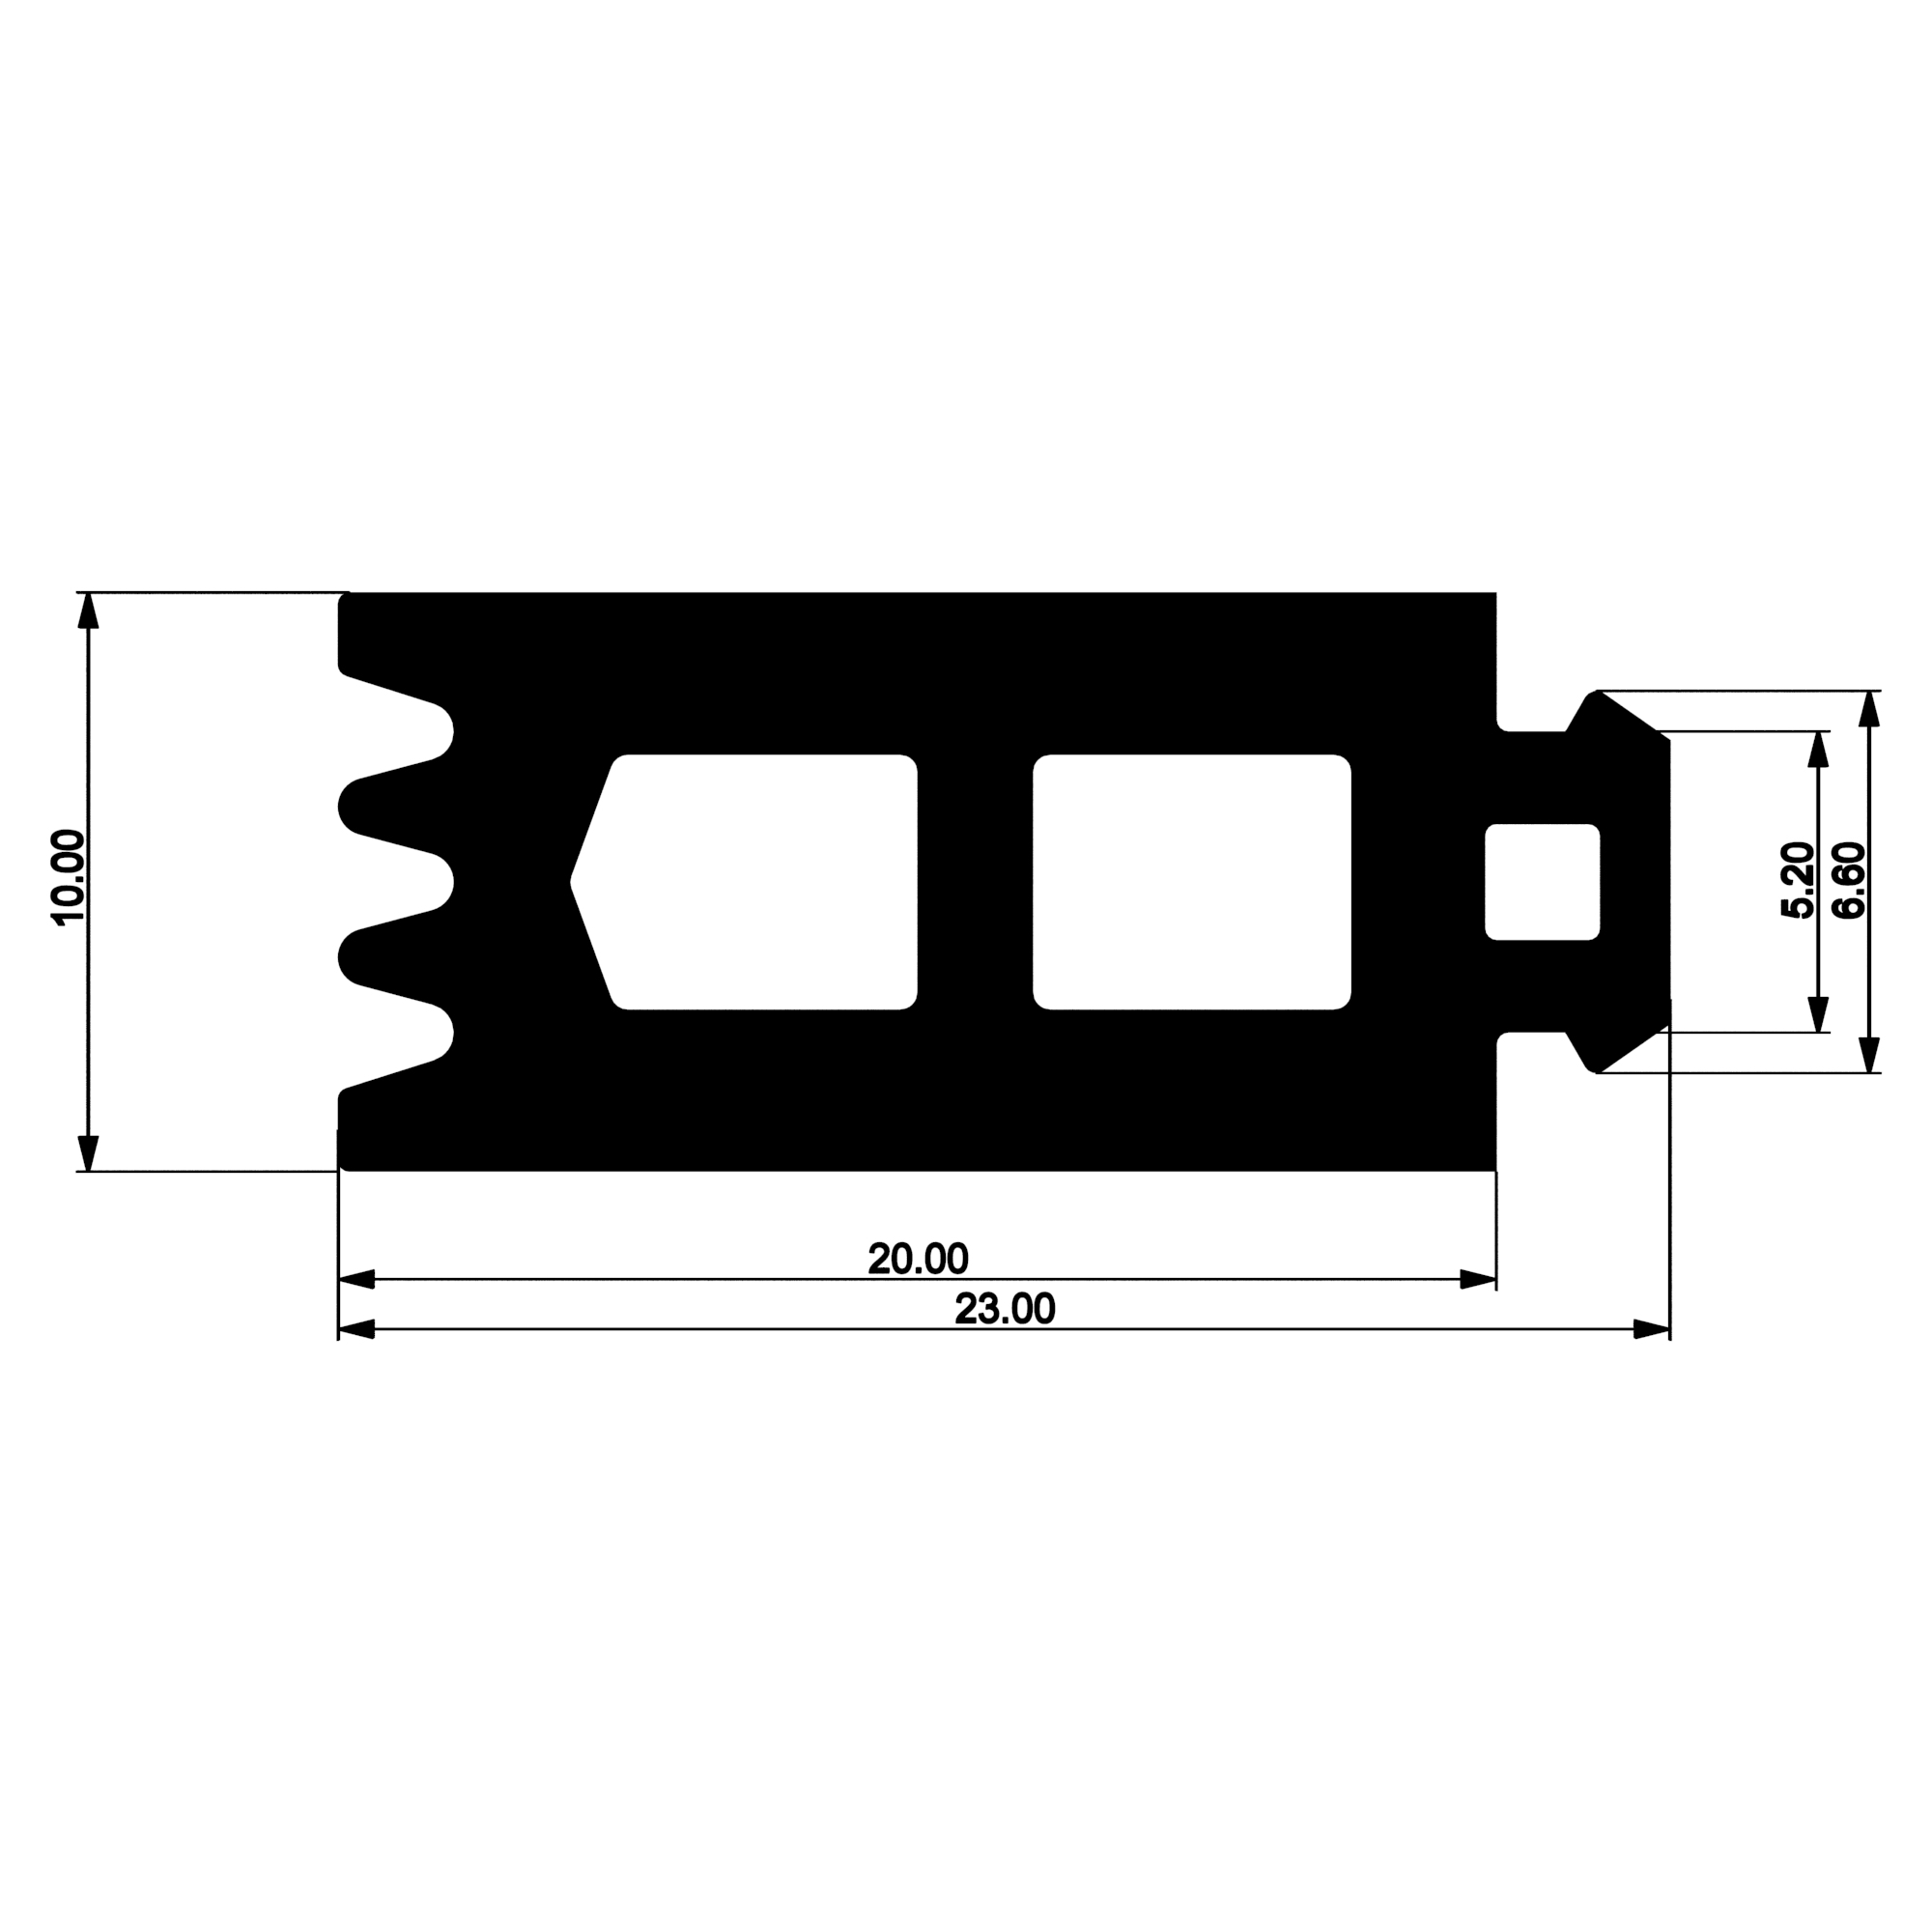 Уплотнитель многоусый E02 012 03 | под стекло из EPDM (термомост 20 мм)